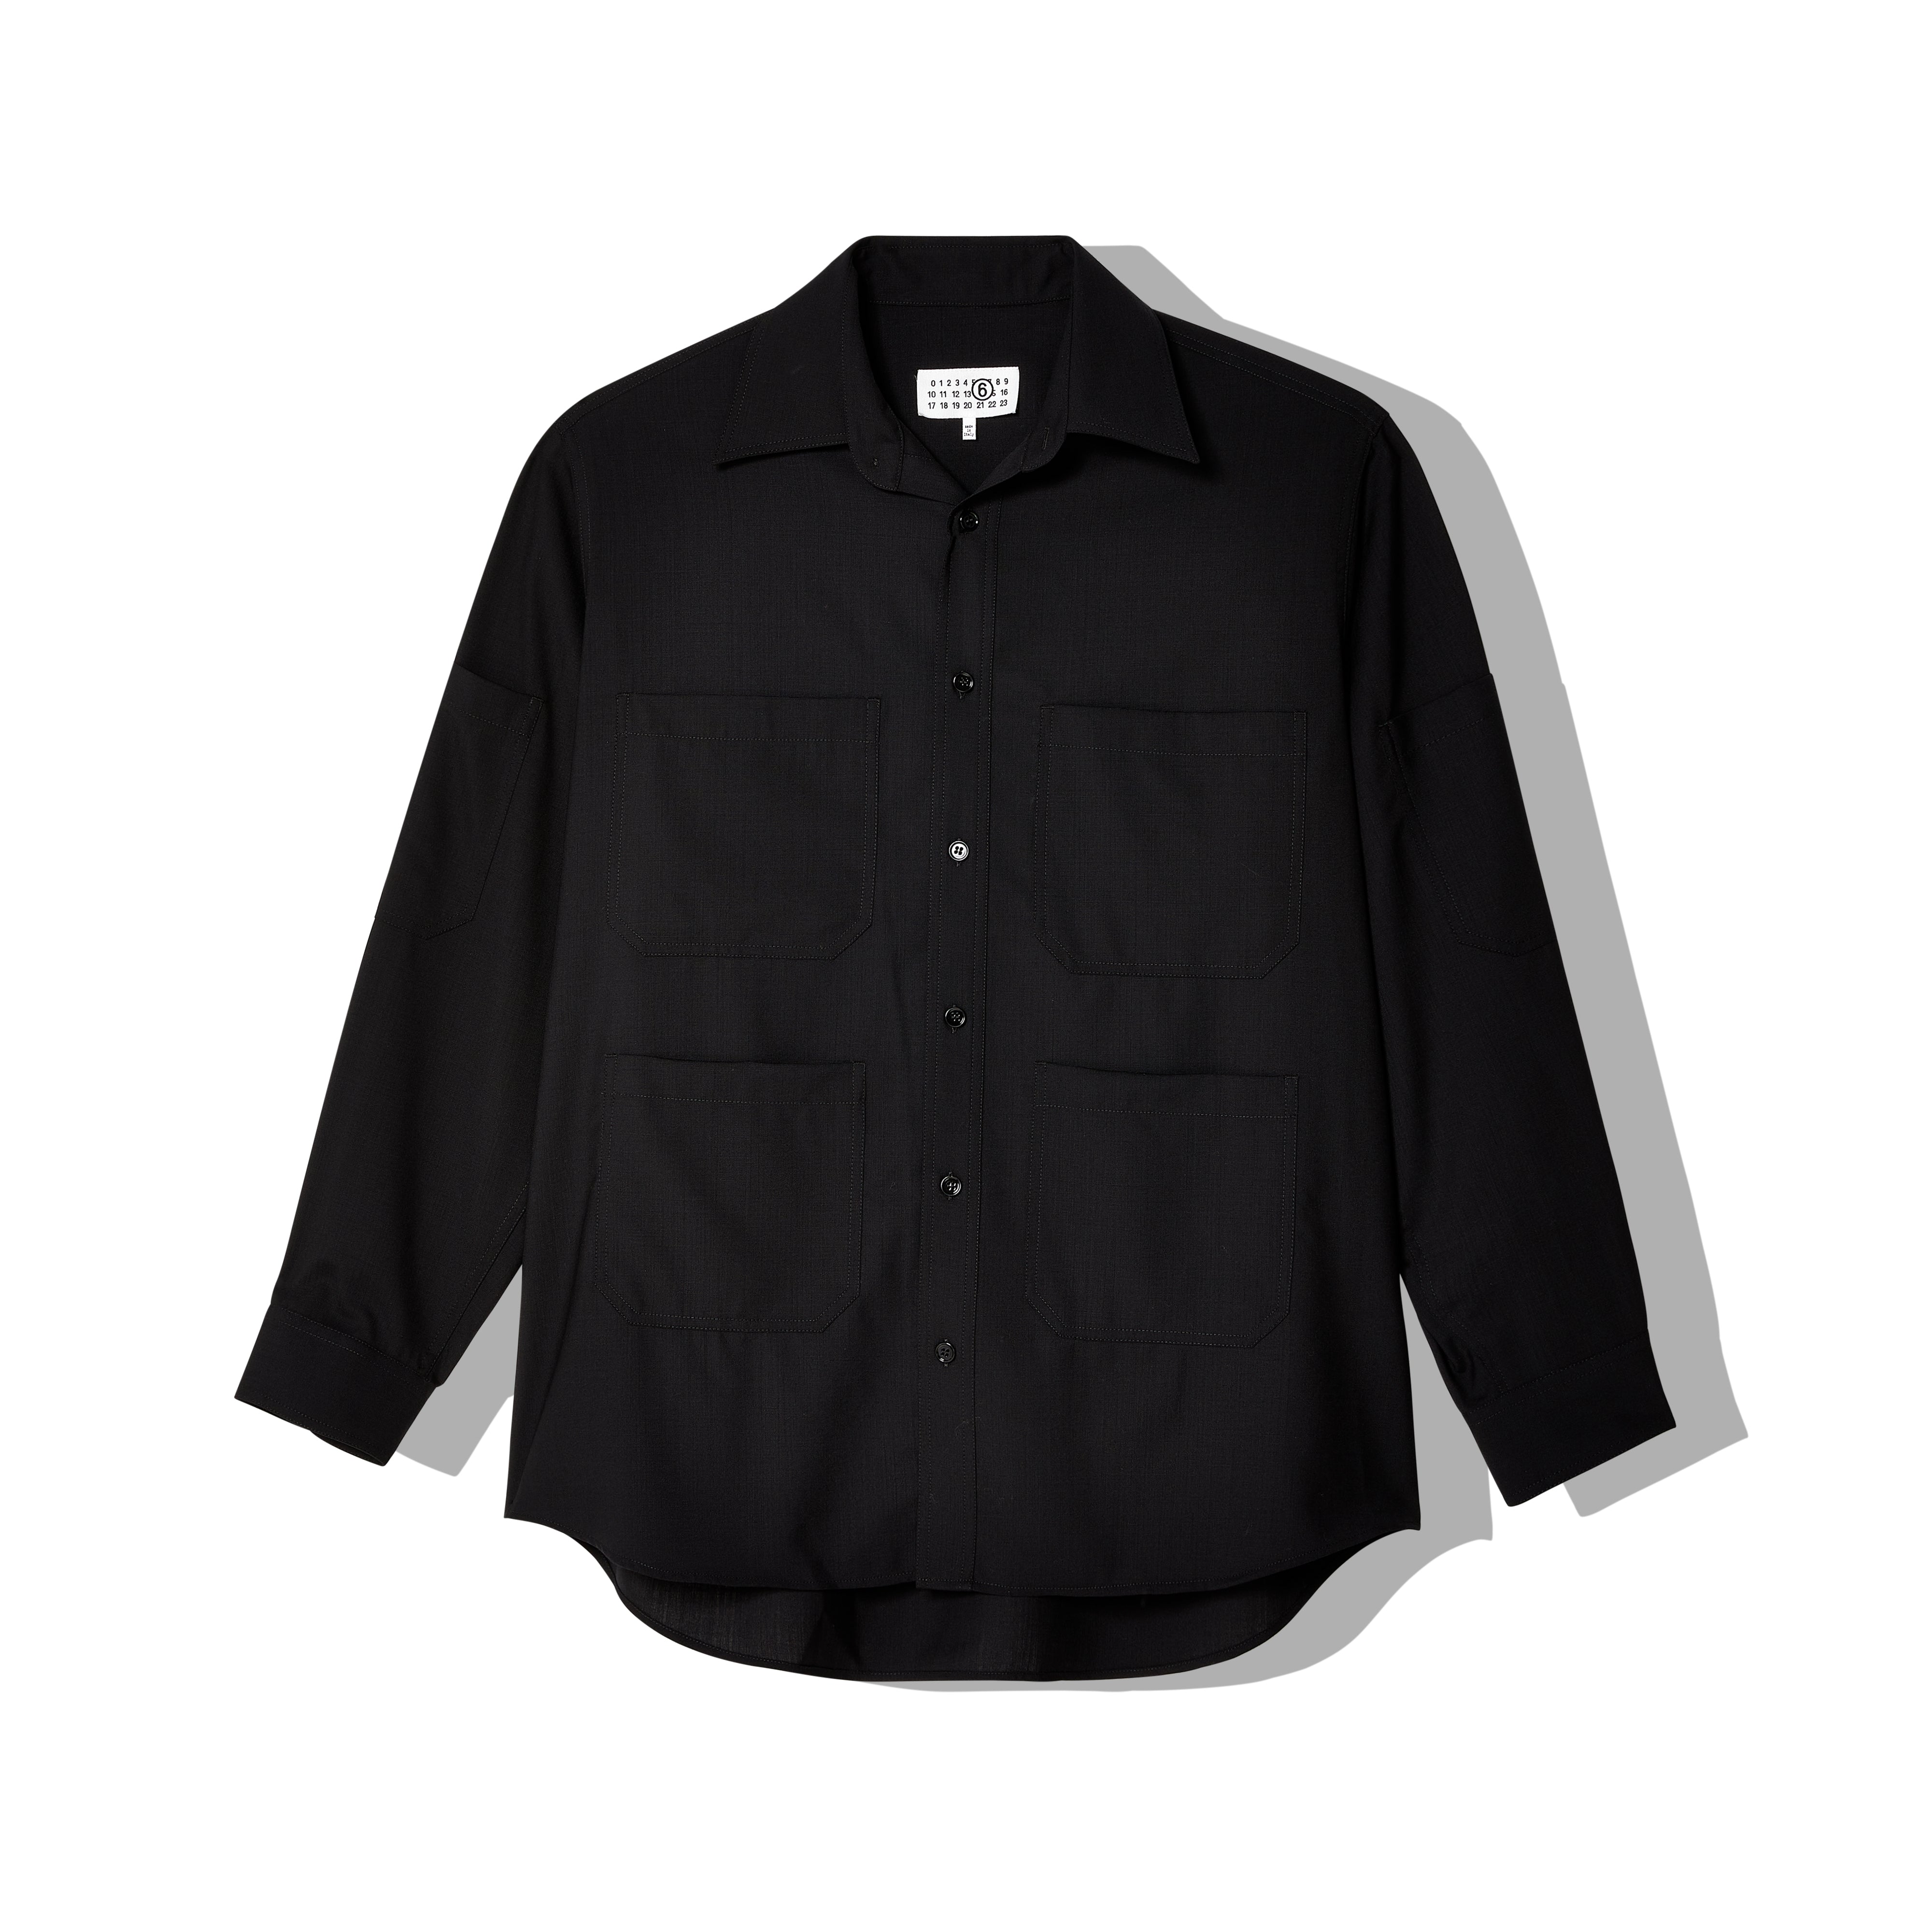 MM6 Maison Margiela - Men's Long-Sleeved Shirt - (Black) – DSMNY E 